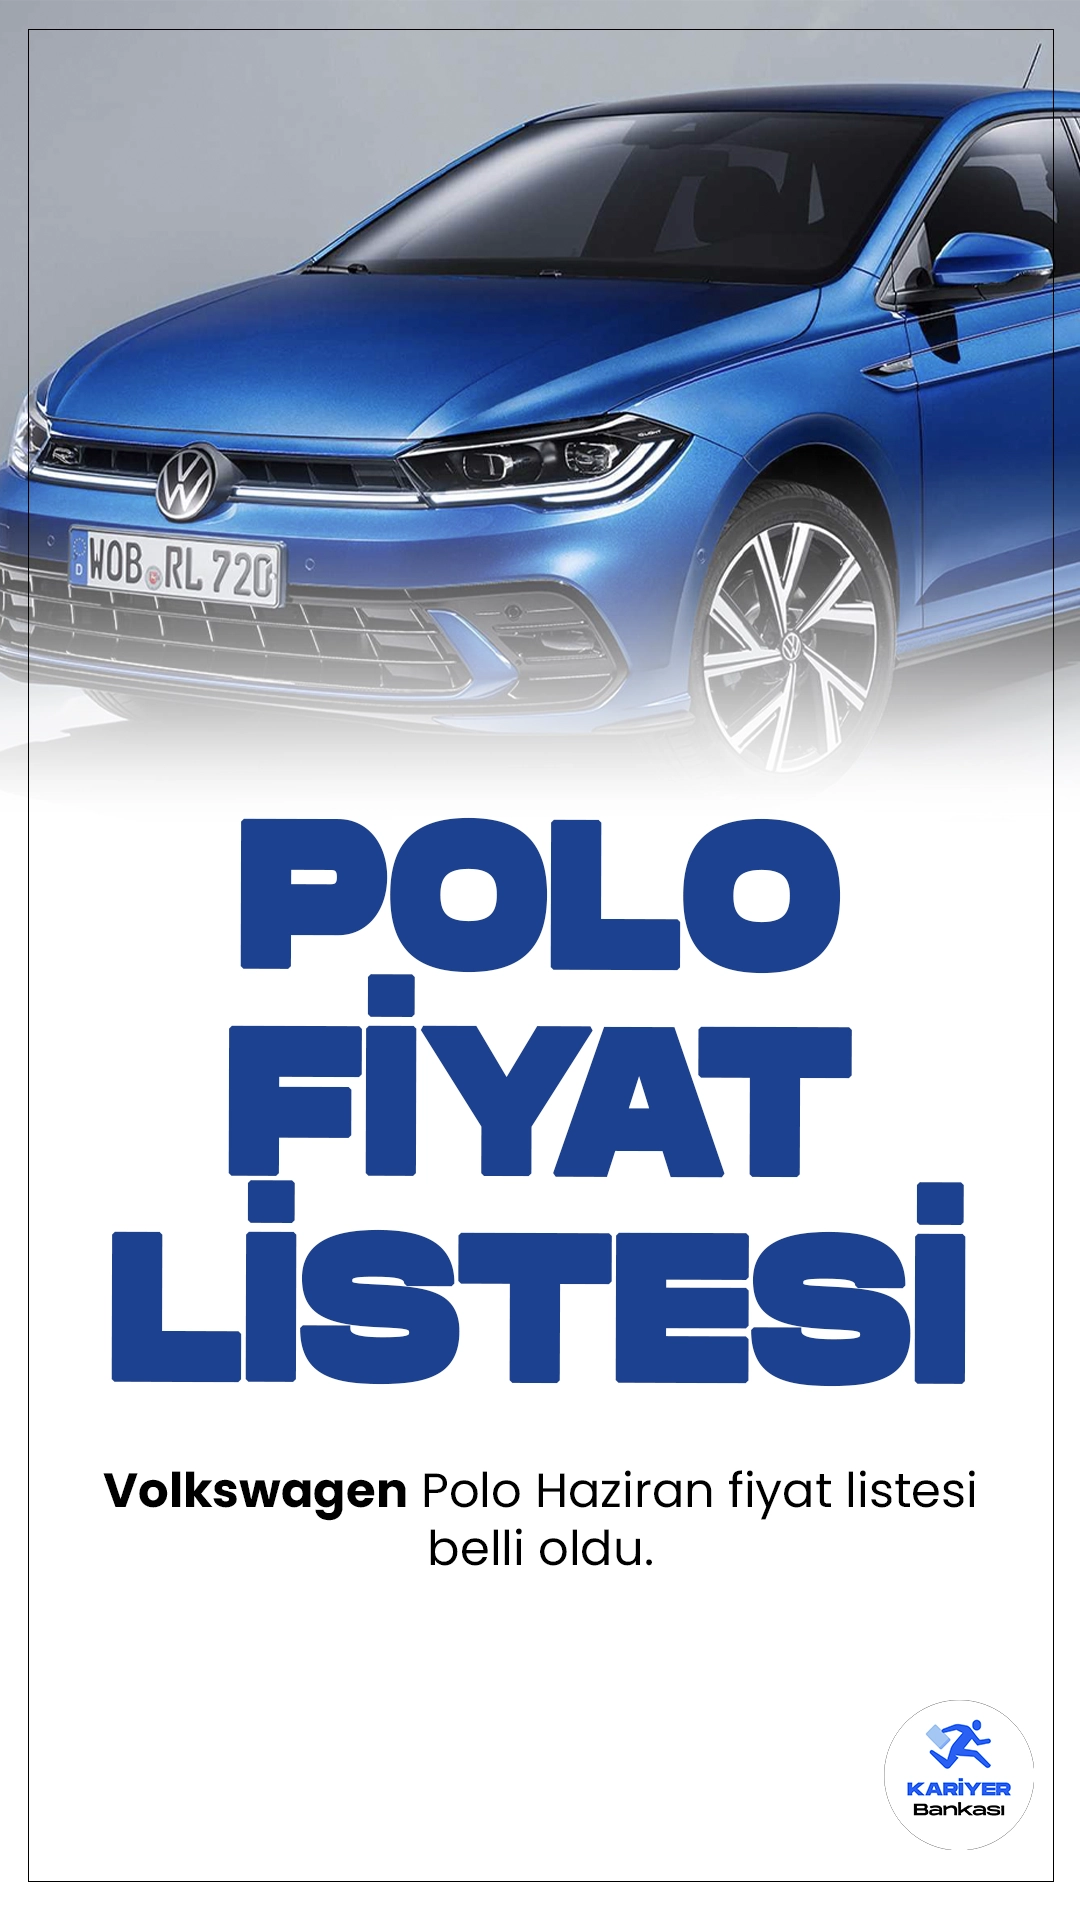 Volkswagen Polo Haziran 2024 Fiyat Listesi Yayımlandı.Volkswagen'in Polo modeli, aerodinamik yapısıyla hem yakıt verimliliğini artırıyor hem de estetik bir görünüm sunuyor. Araç, keskin hatları ve modern çizgileriyle göz alıcı bir tasarıma sahip. İç mekanda ise geniş ve konforlu bir alan sunarak sürücü ve yolculara üstün bir seyahat deneyimi vadediyor.